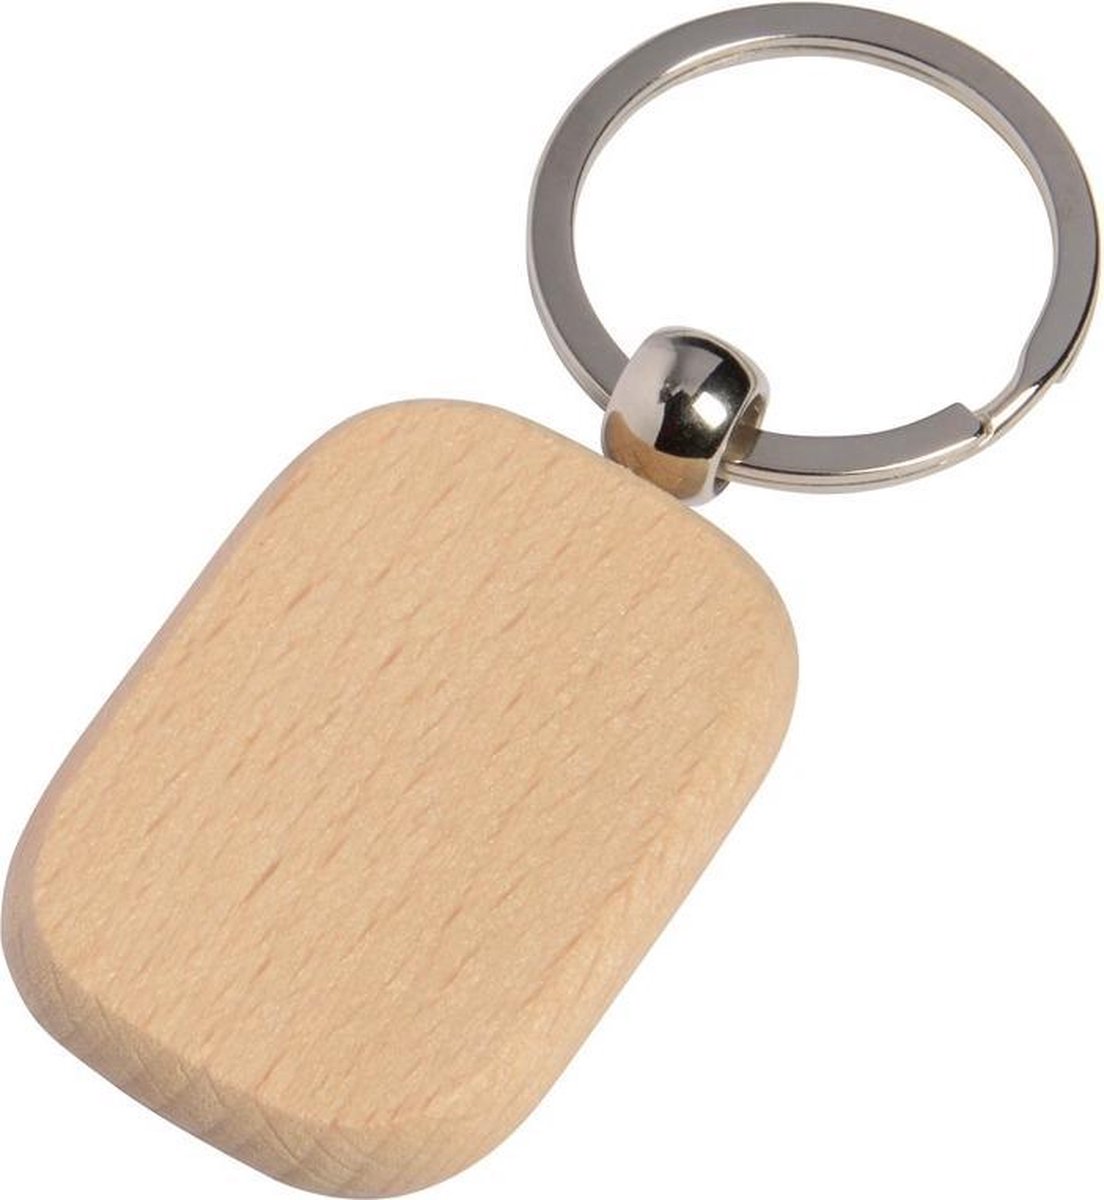 5x porte-clés en bois 8 cm - Avec porte-clés pour maison, hôtel